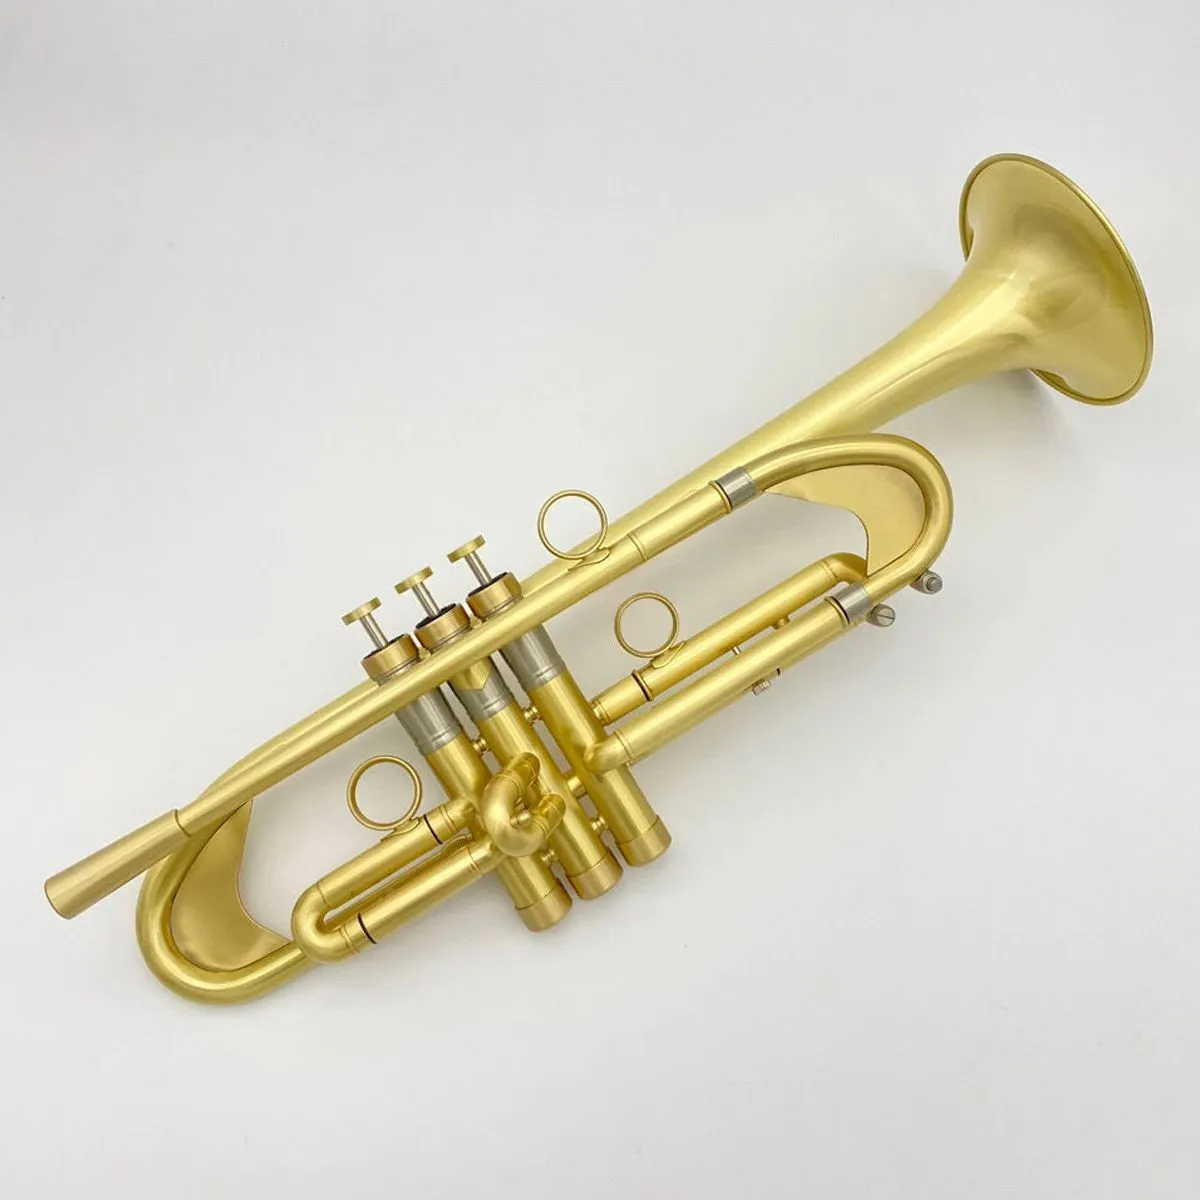 Neues High-End-Trompetenmusikinstrument aus Messing, vergoldet, gebürstet, erschwerend, stromlinienförmig, professionelle Trompete, Vollkupfer